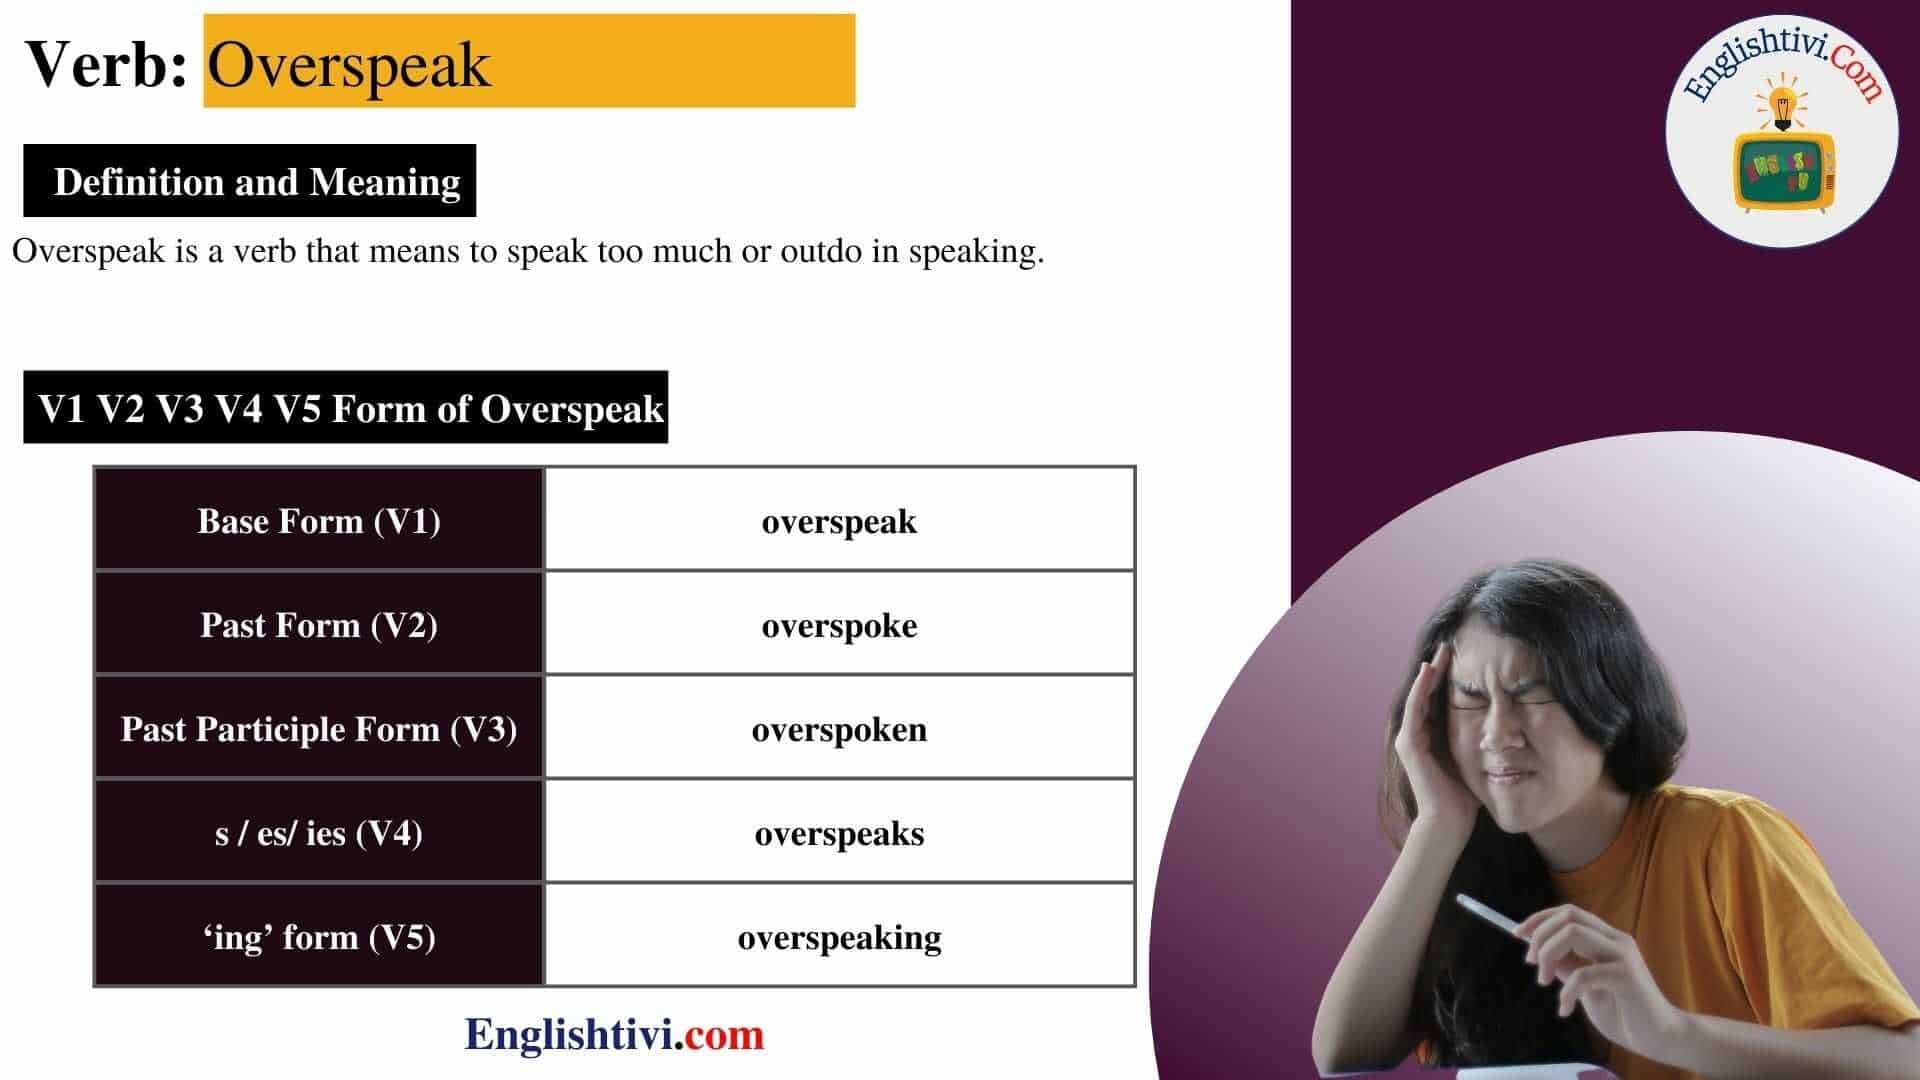 Overspeak V1 V2 V3 V4 V5 Base Form, Past Simple, Past Participle Form of Overspeak